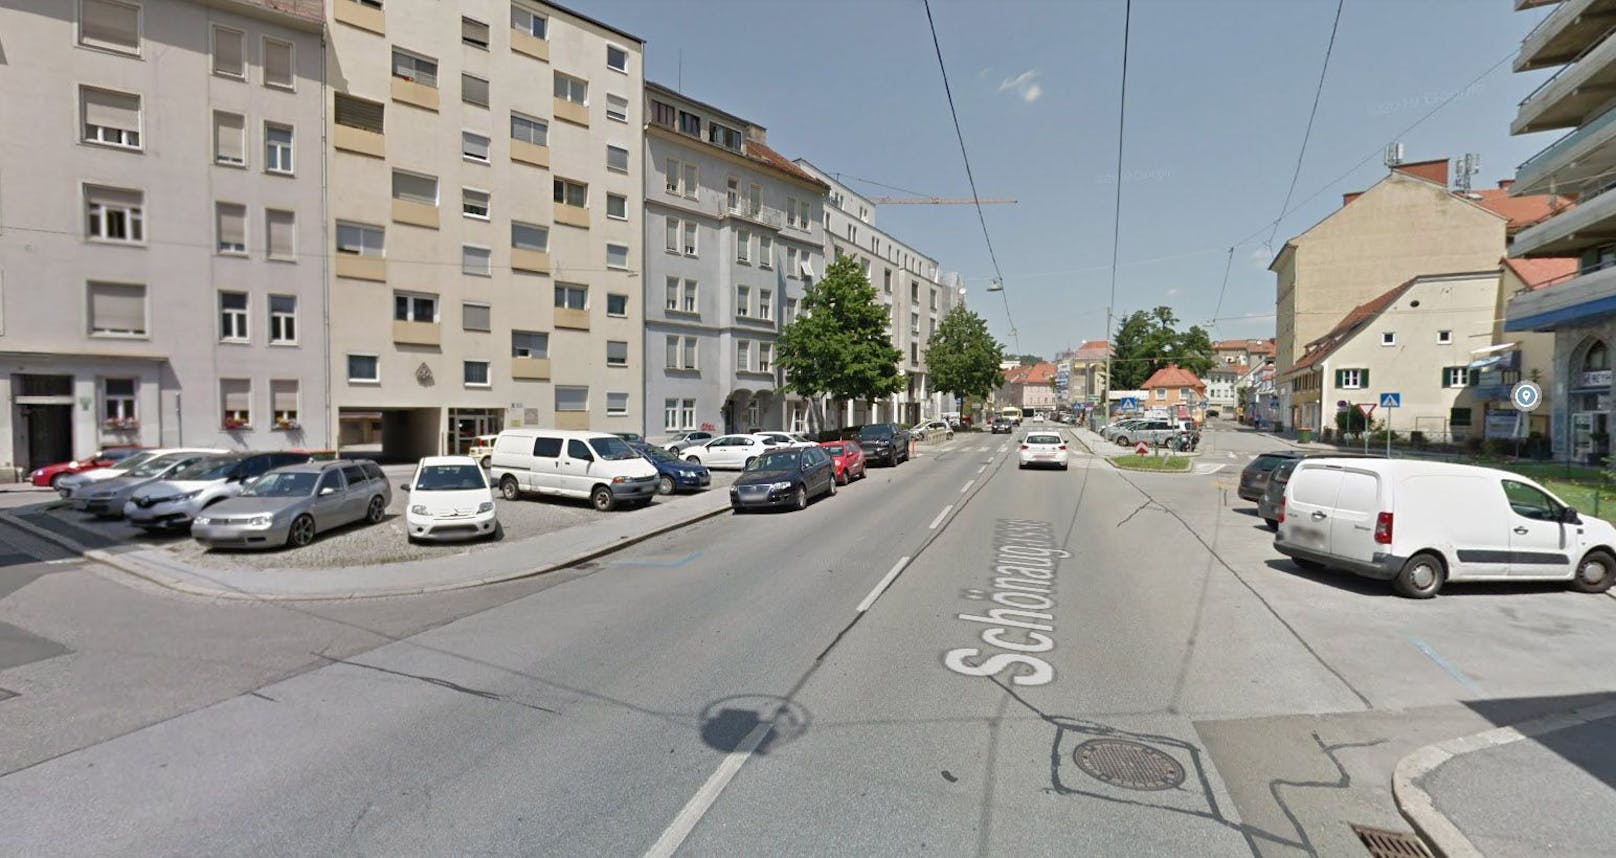 Der Unfall ereignete sich im Grazer Bezirk Jakomini.